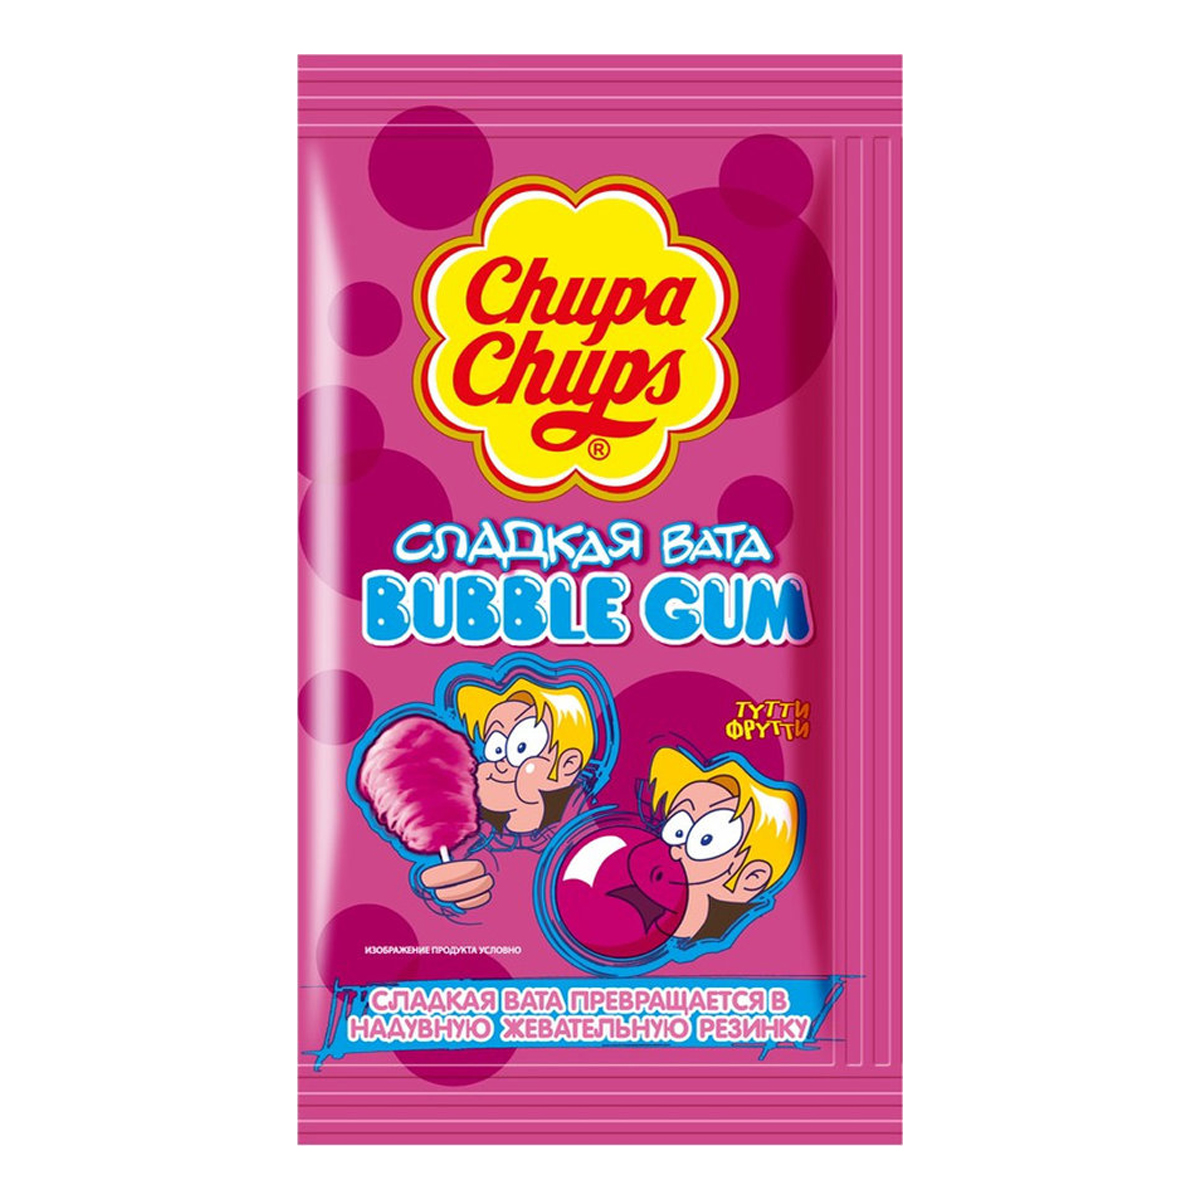 Бабл вата. Chupa chups Bubble Gum сладкая вата.